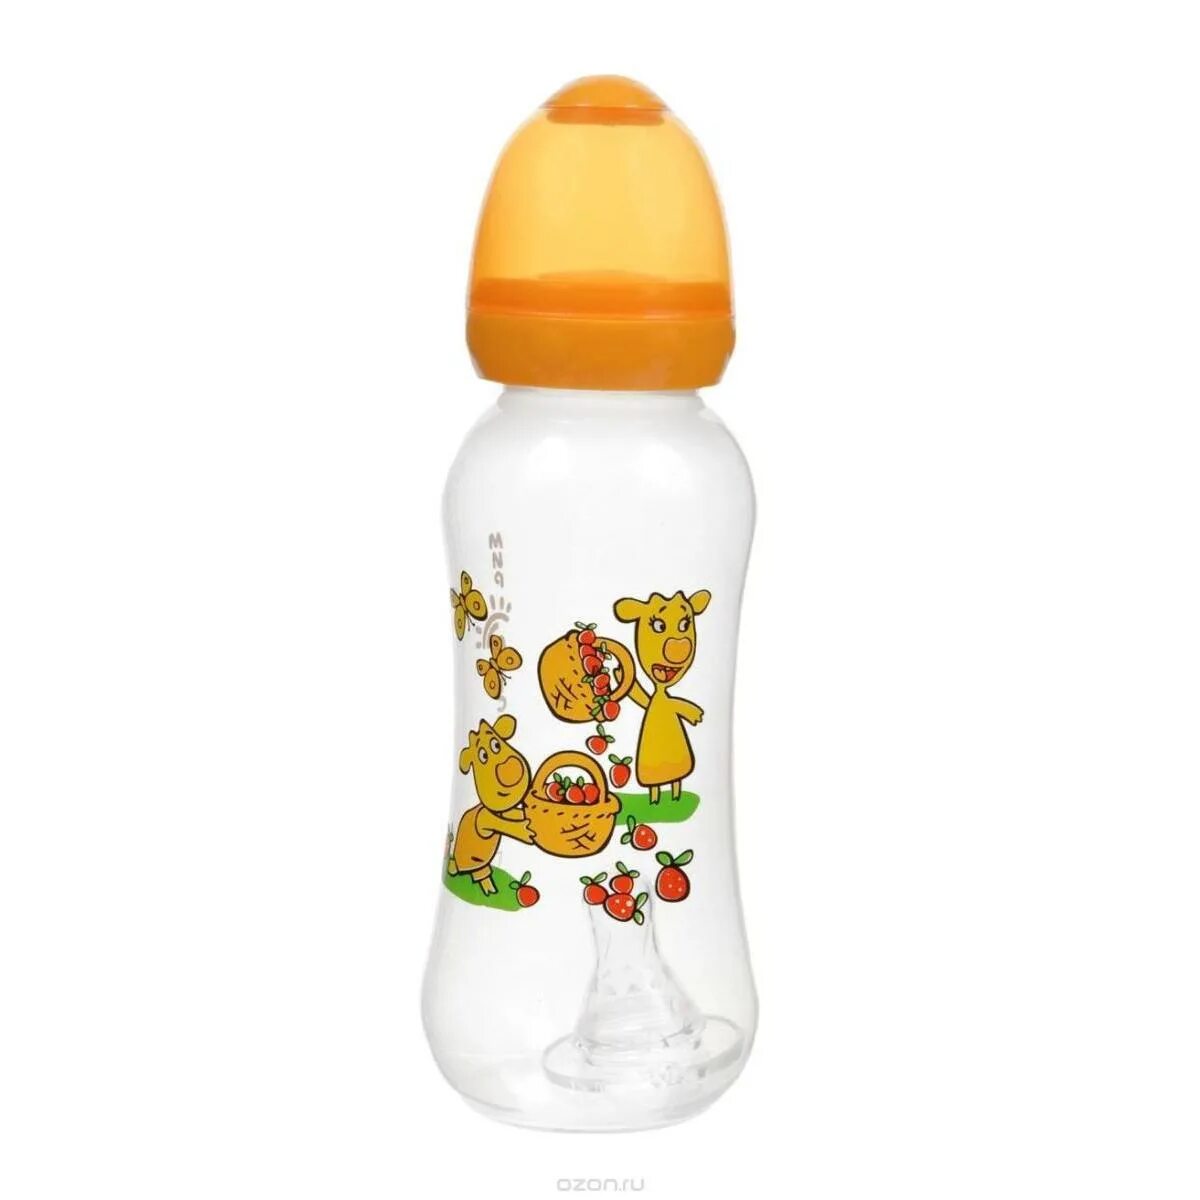 Новая бутылочка. Малыш с бутылочкой. Бутылка для детей. Детские бутылочки для мальчиков. Детские бутылки для малышей.